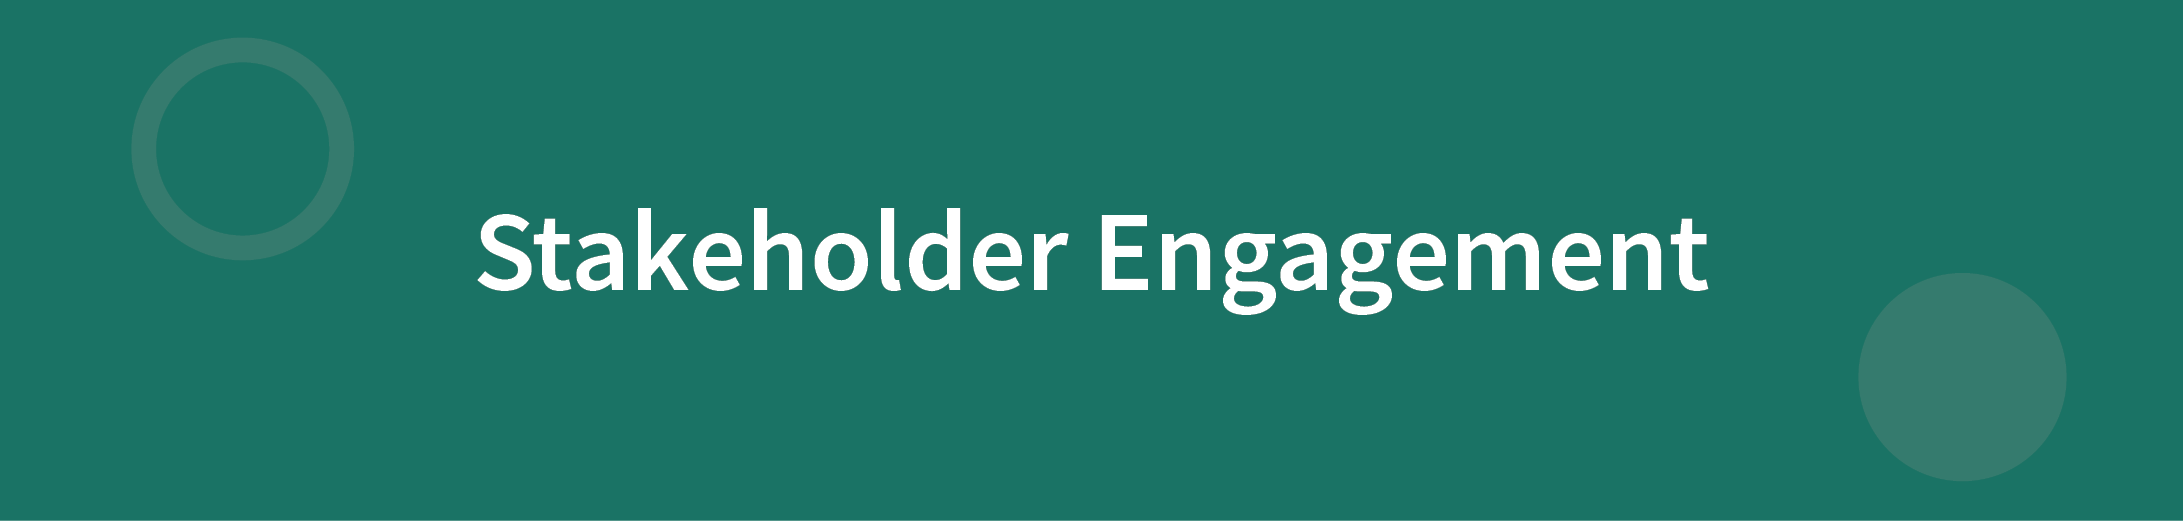 Stakeholder Engagement Framework Header